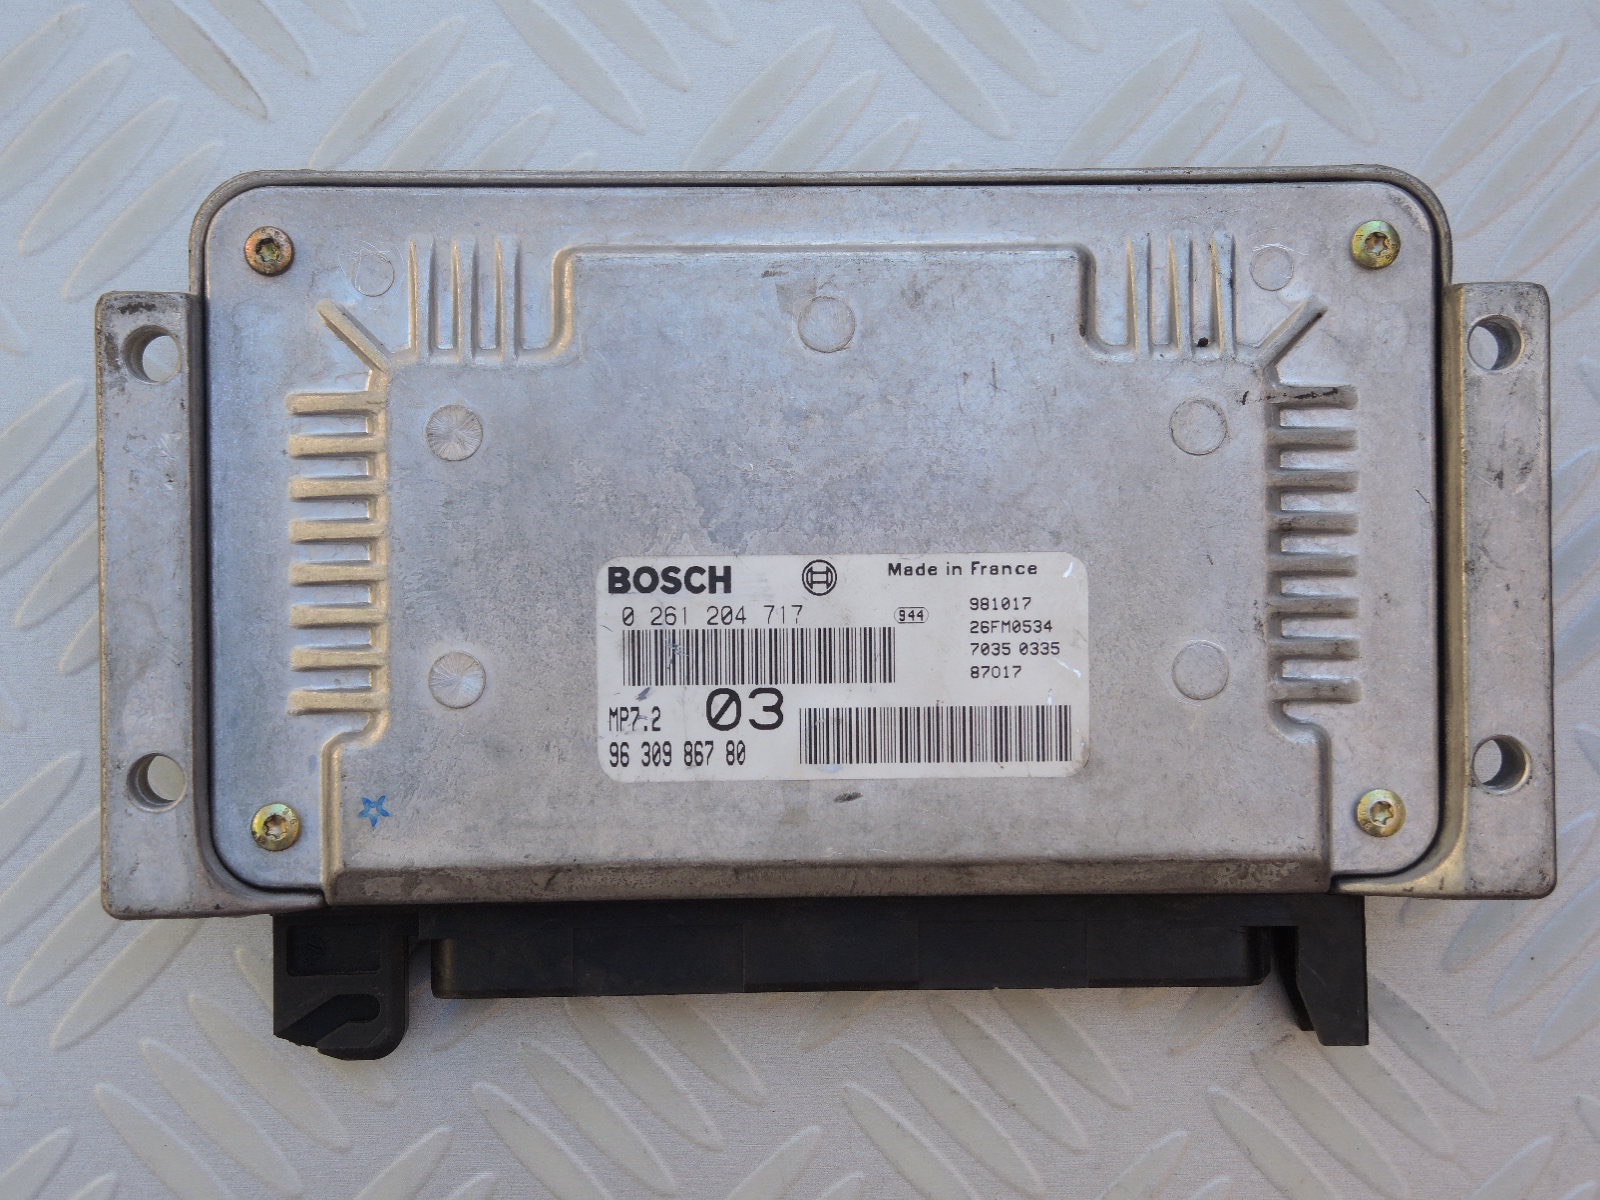 Bosch mp 7.0